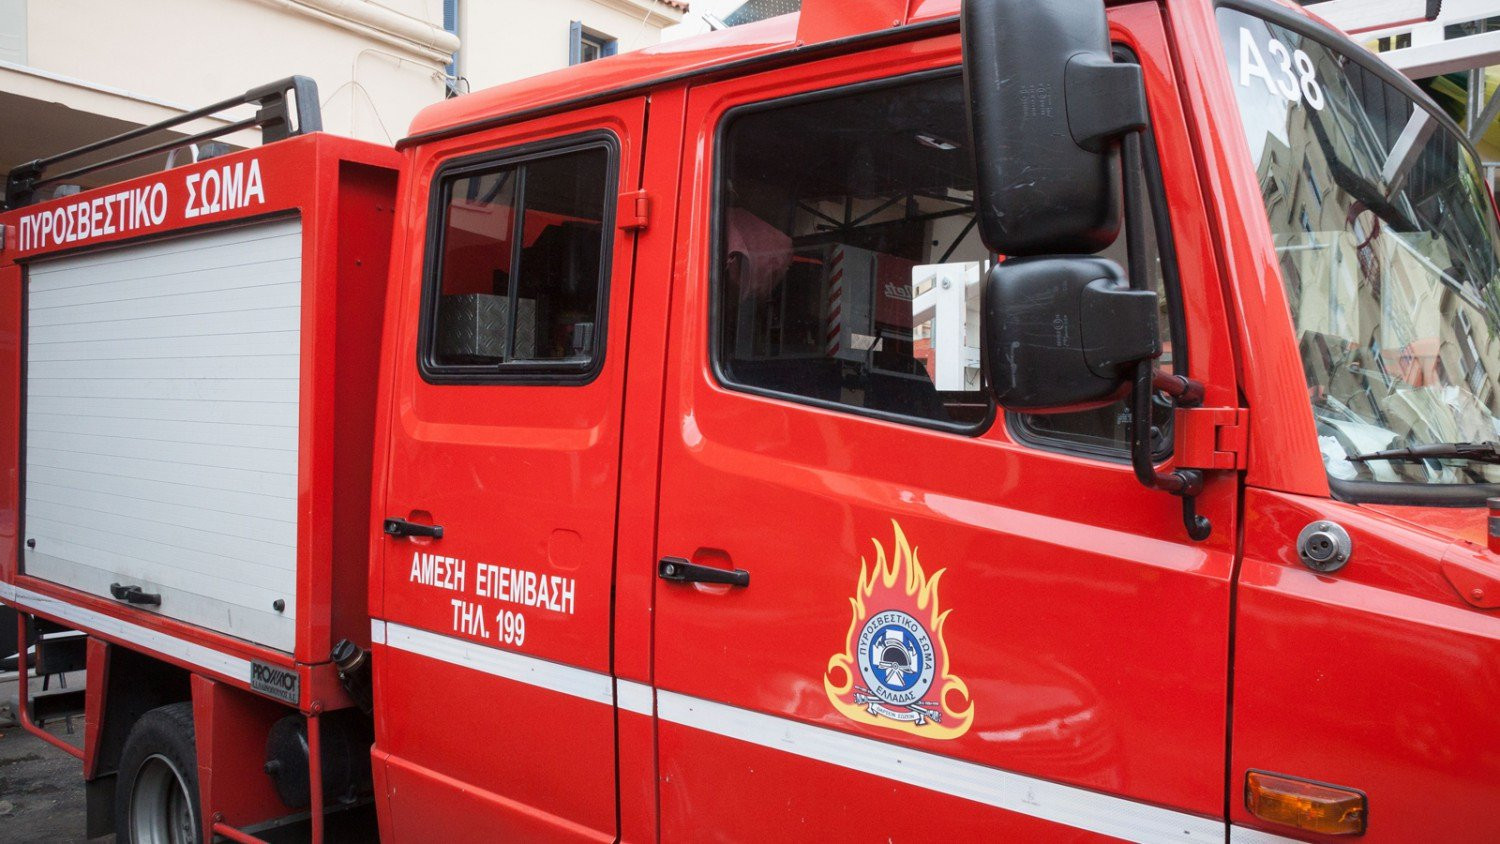 Συναγερμός στην Πυροσβεστική από πυρκαγιά σε ορφανοτροφείο στο Ίλιον – Μεγάλη επιχείρηση κατάσβεσης